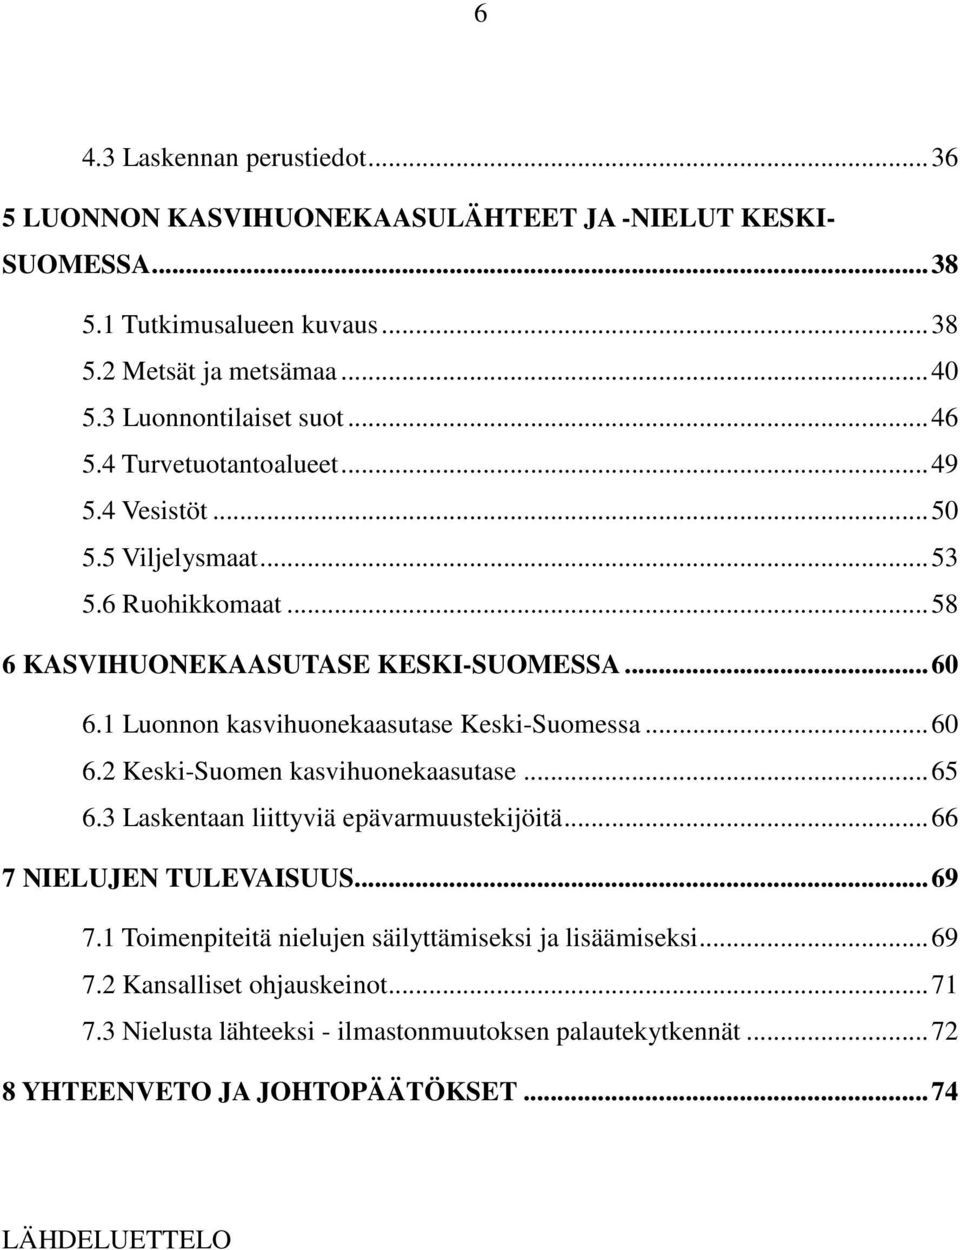 1 Luonnon kasvihuonekaasutase Keski-Suomessa... 60 6.2 Keski-Suomen kasvihuonekaasutase... 65 6.3 Laskentaan liittyviä epävarmuustekijöitä... 66 7 NIELUJEN TULEVAISUUS... 69 7.